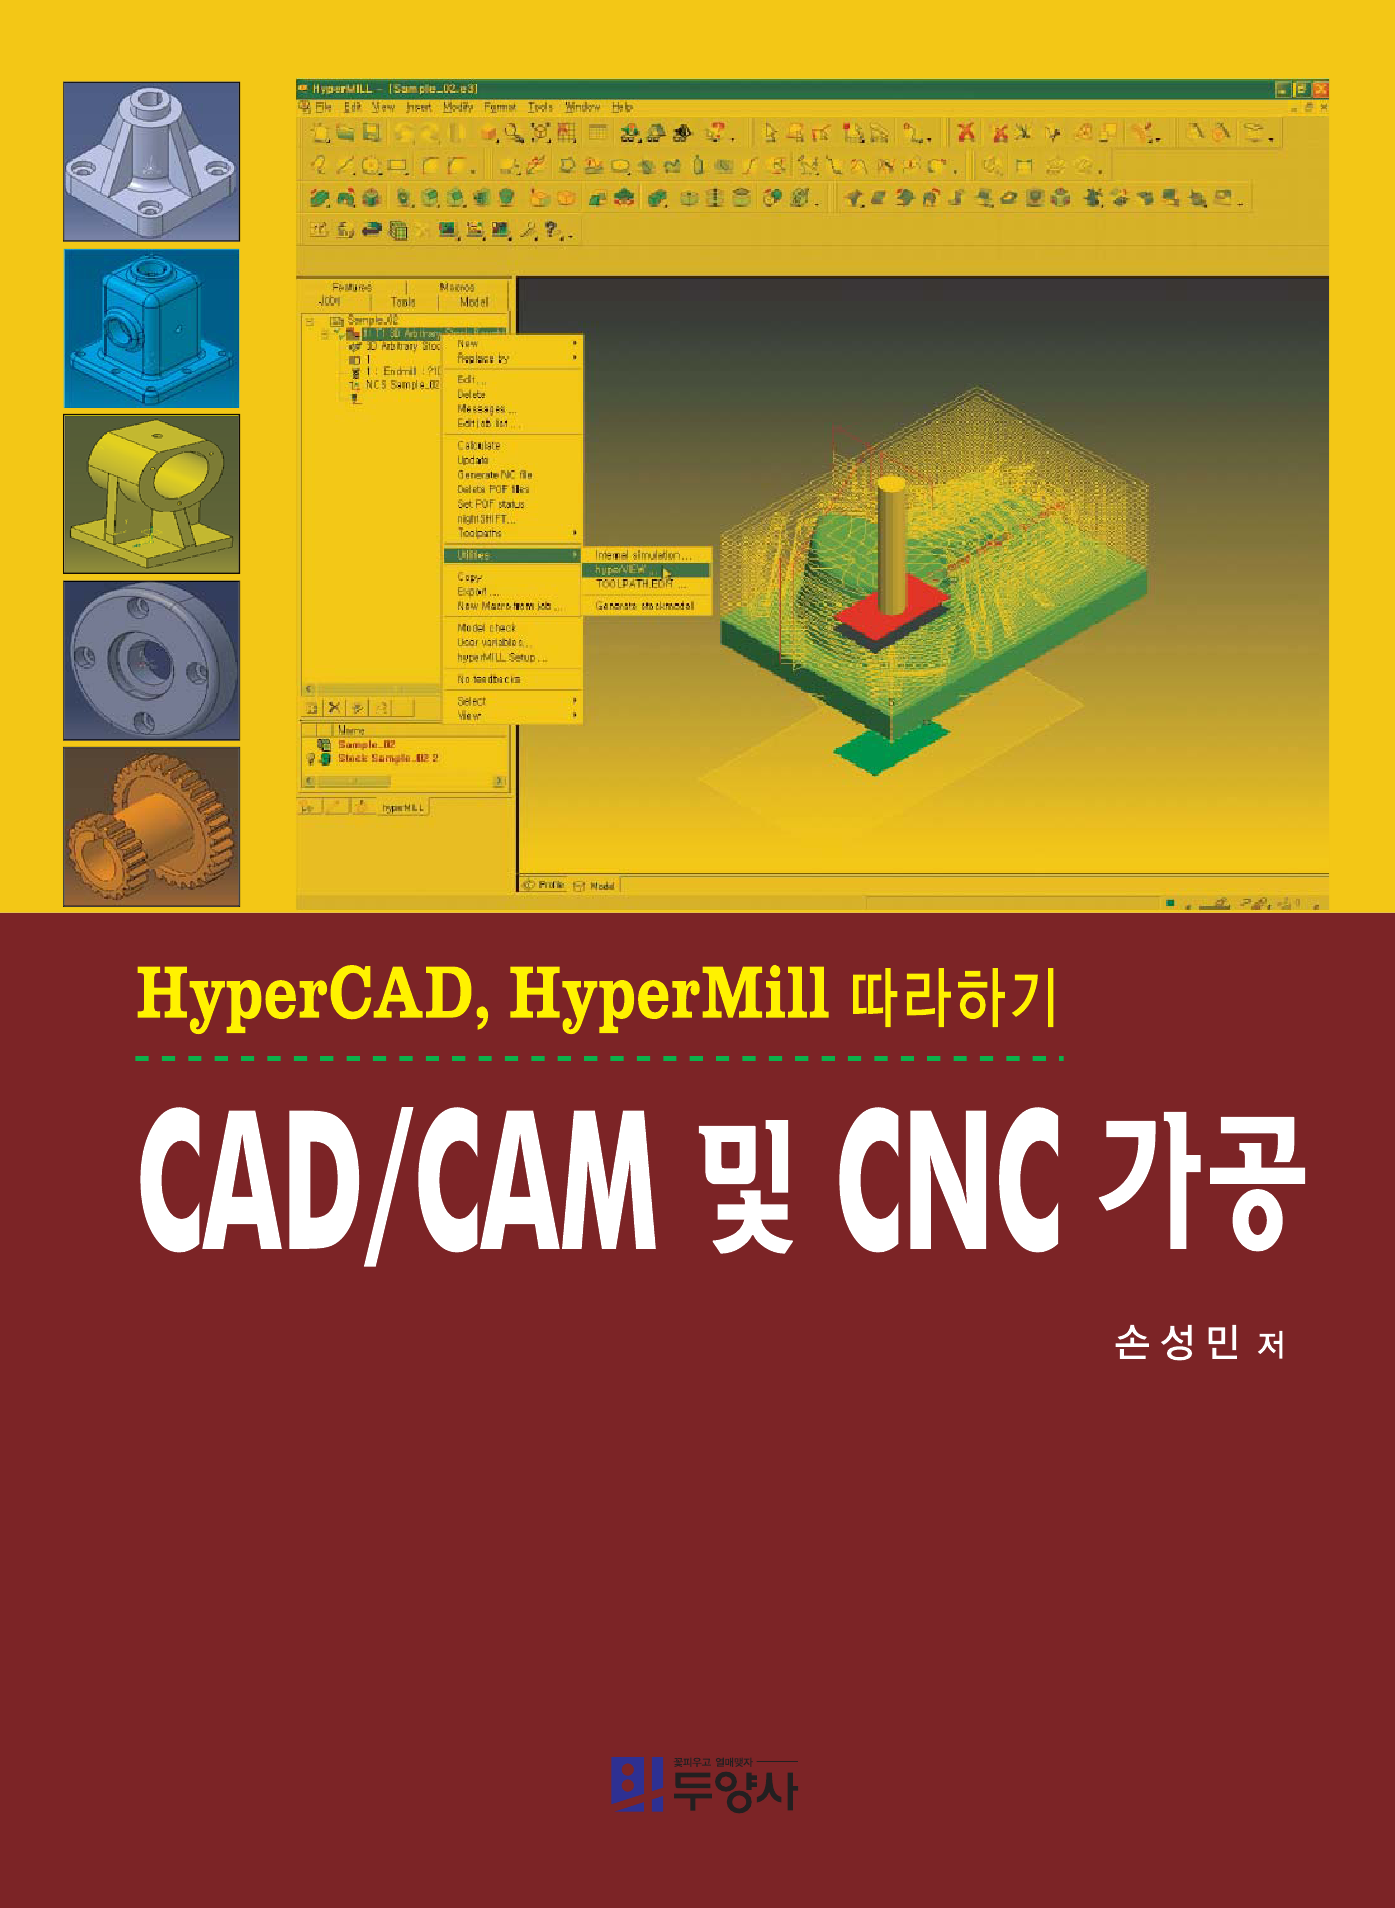 CAD/CAM 및 CNC가공